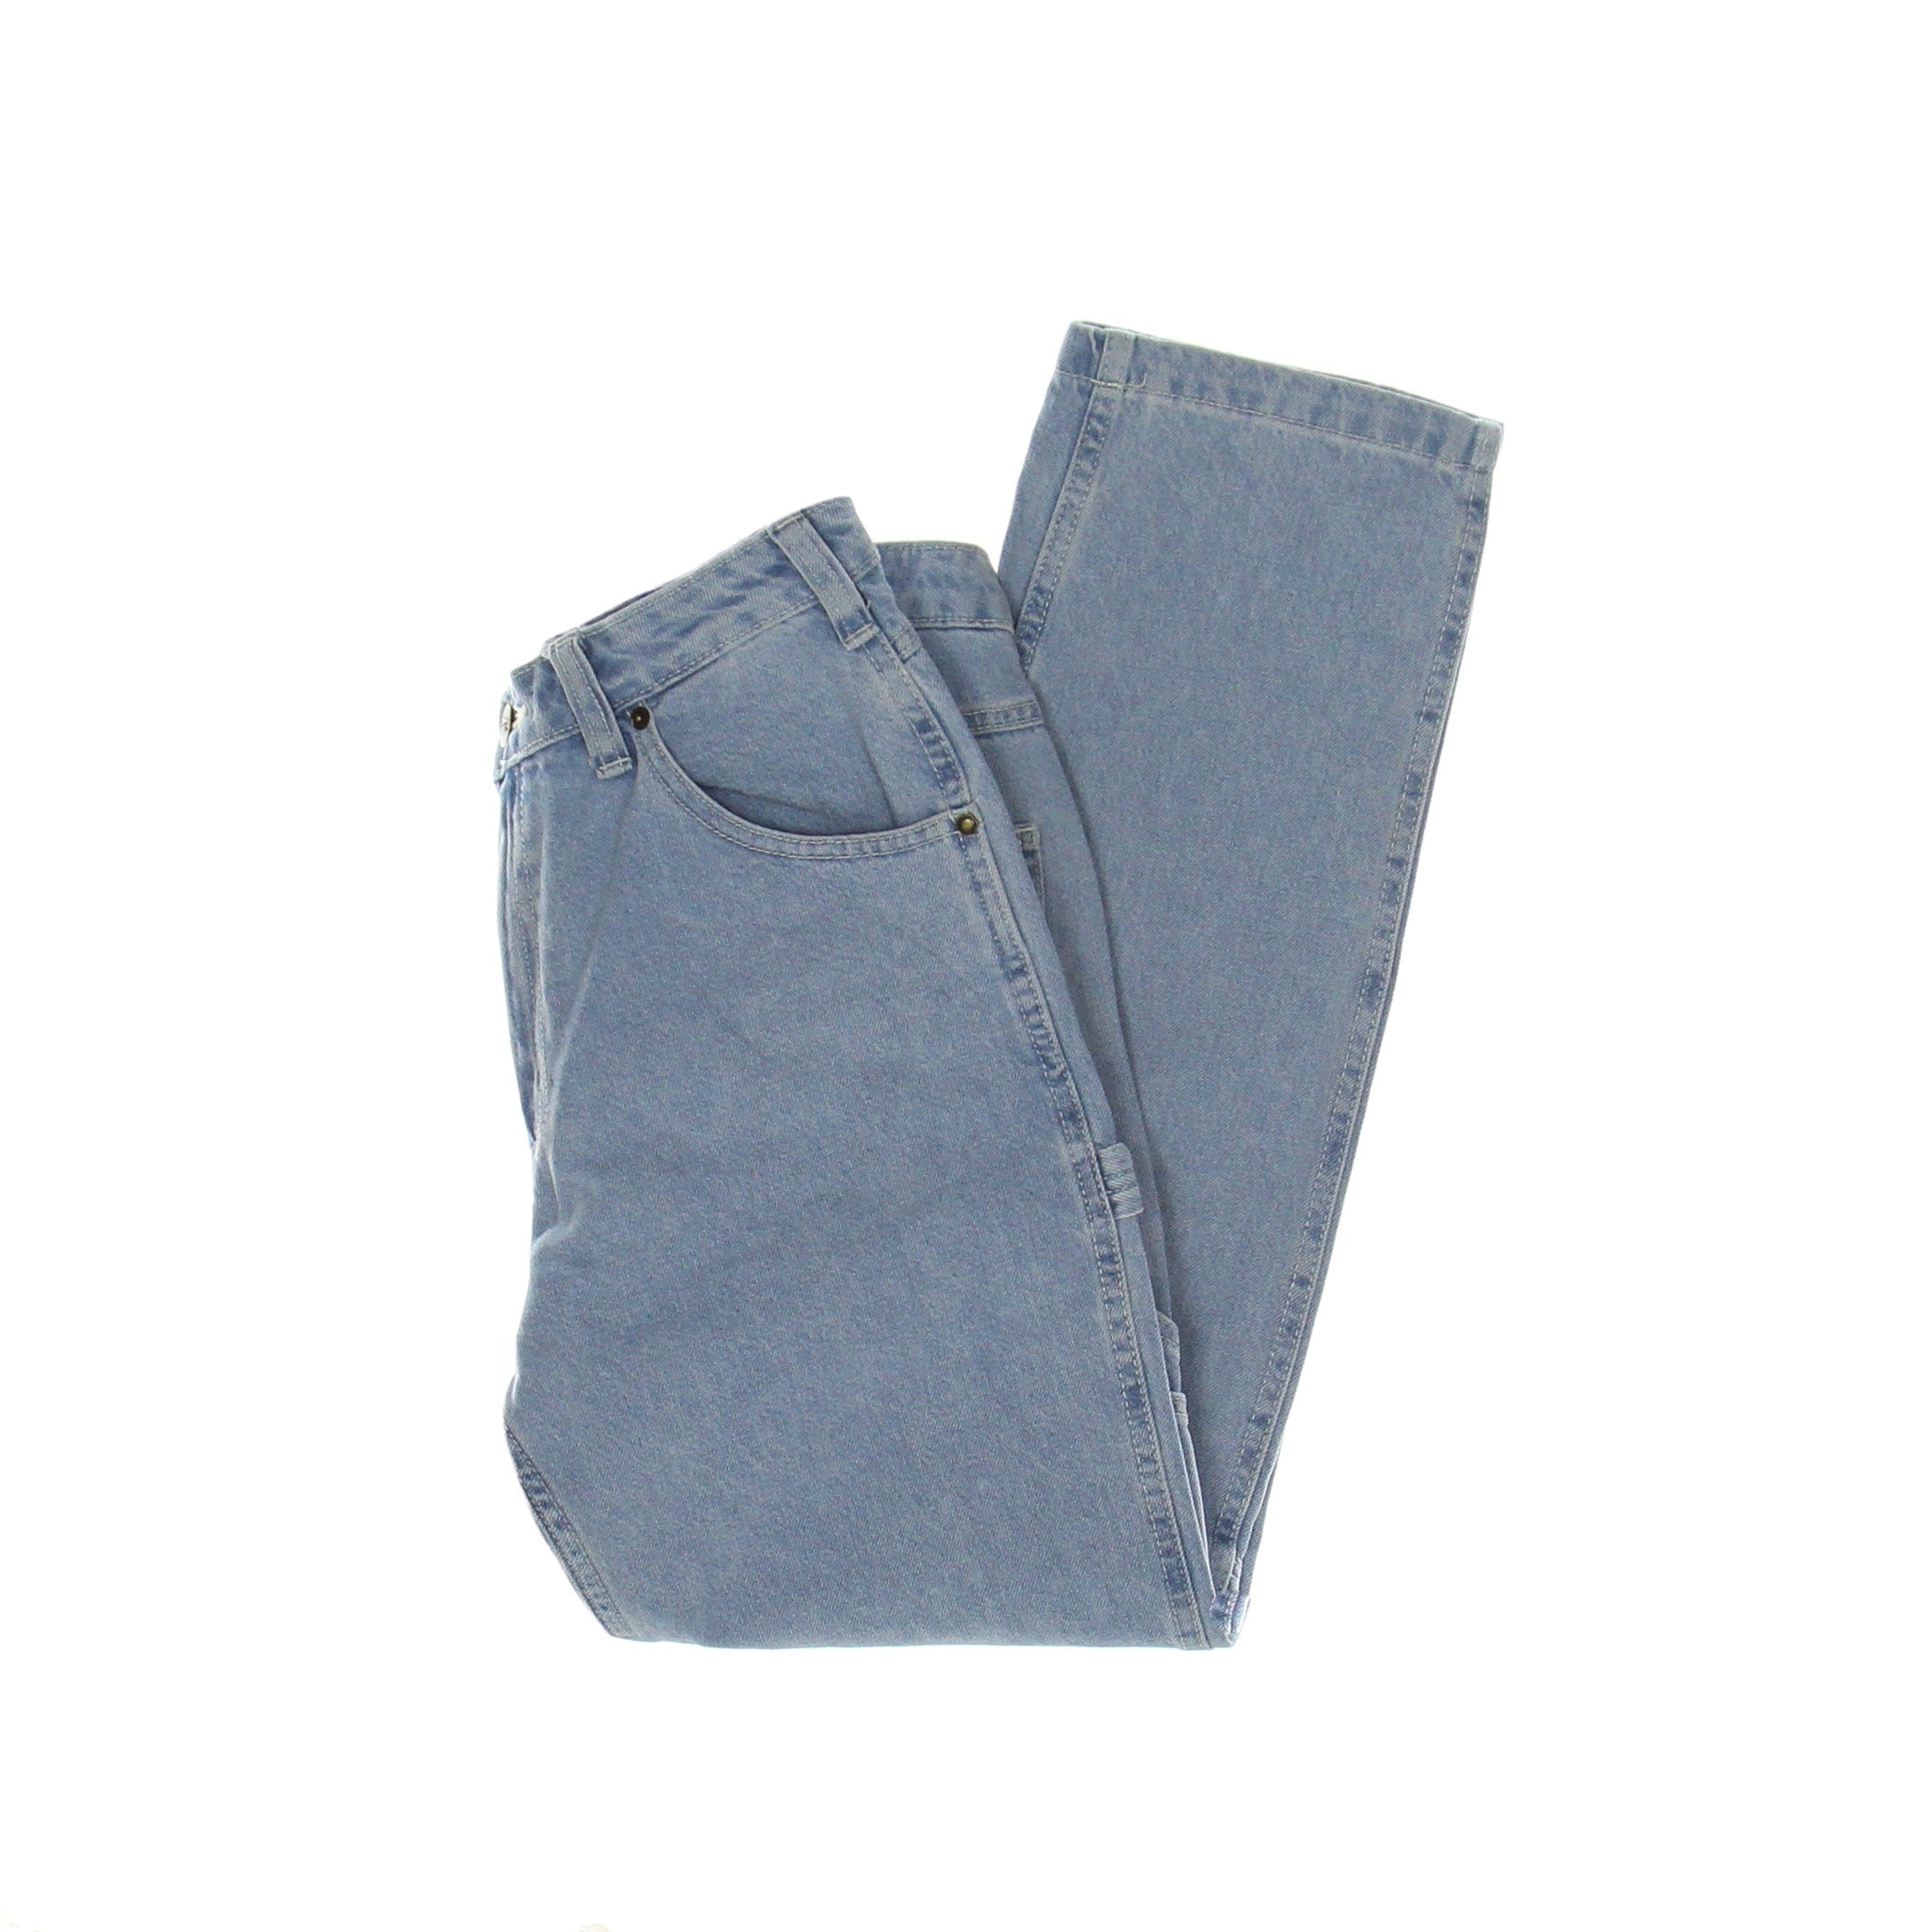 Ellendale Women's Jeans Denim Vintage Aged Blue